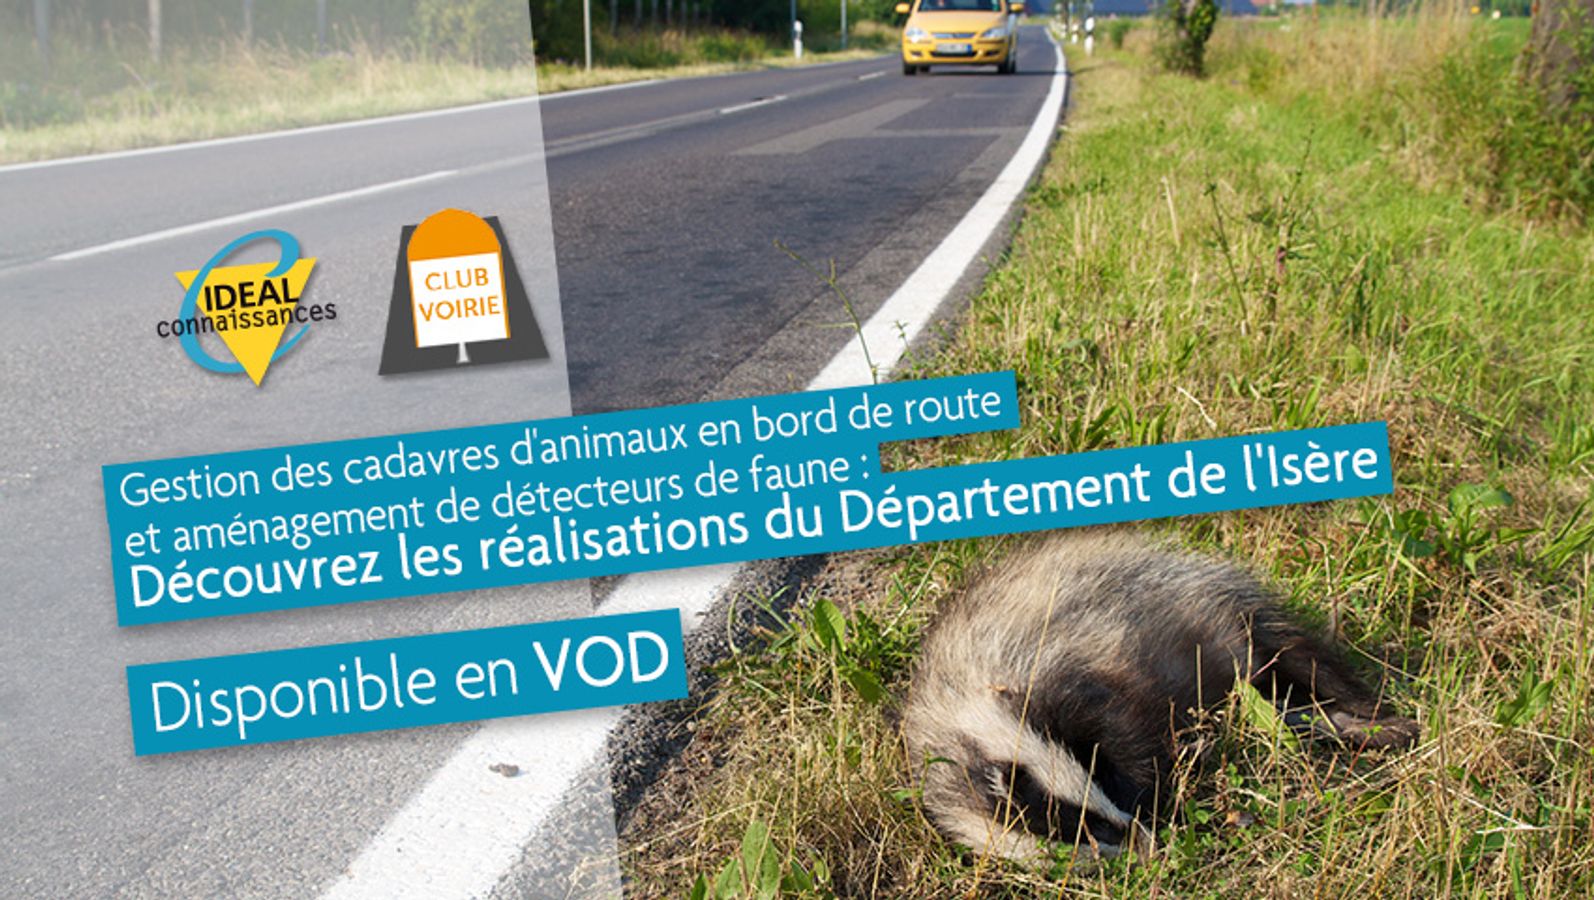 Gestion des cadavres d'animaux en bord de route et aménagement de détecteurs de faune: Découvrez les réalisations du Département de l'Isère